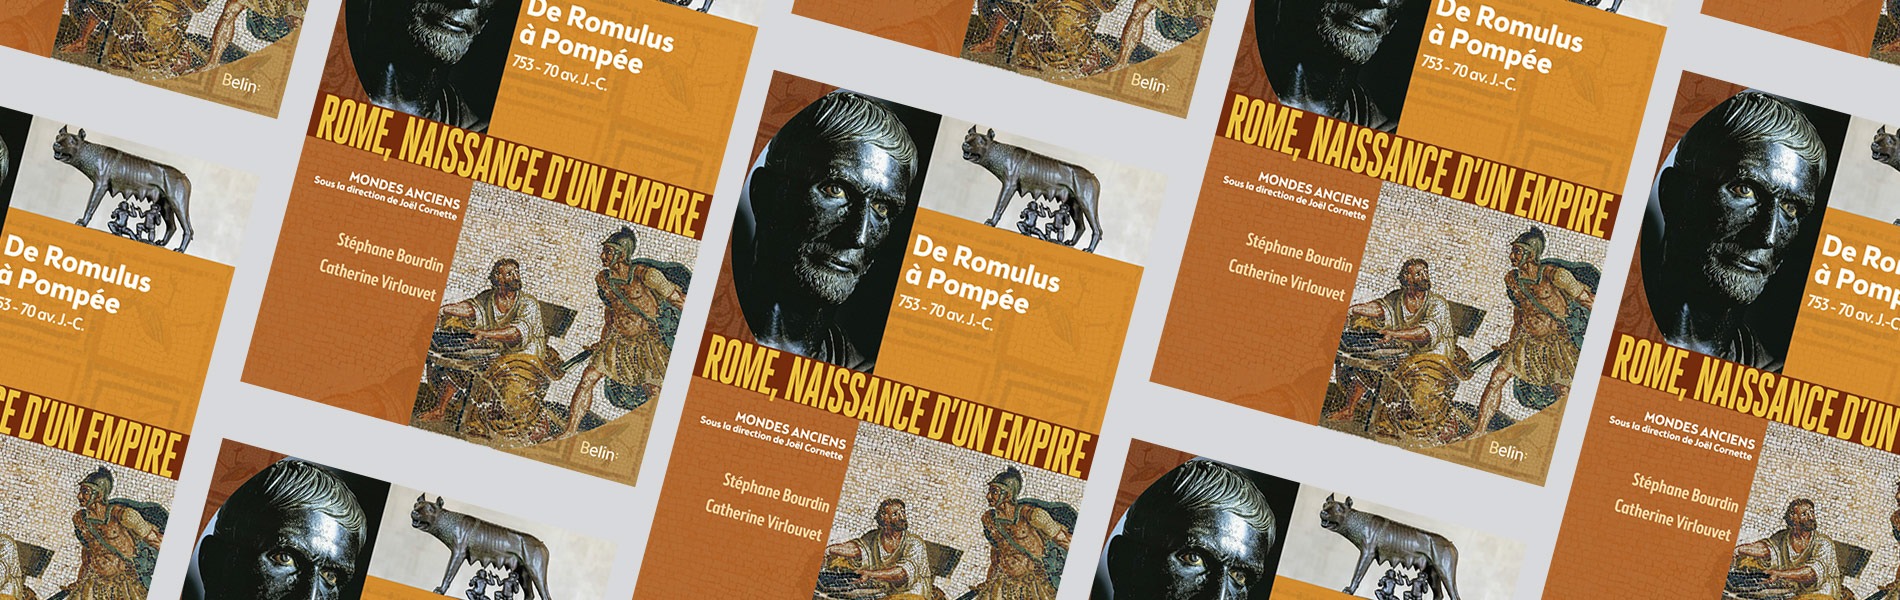 Rome, naissance d'un Empire : de Romulus à Pompée, 753-70 av. J.-C. -  Catherine Virlouvet & Stéphane Bourdin - Mare Nostrum